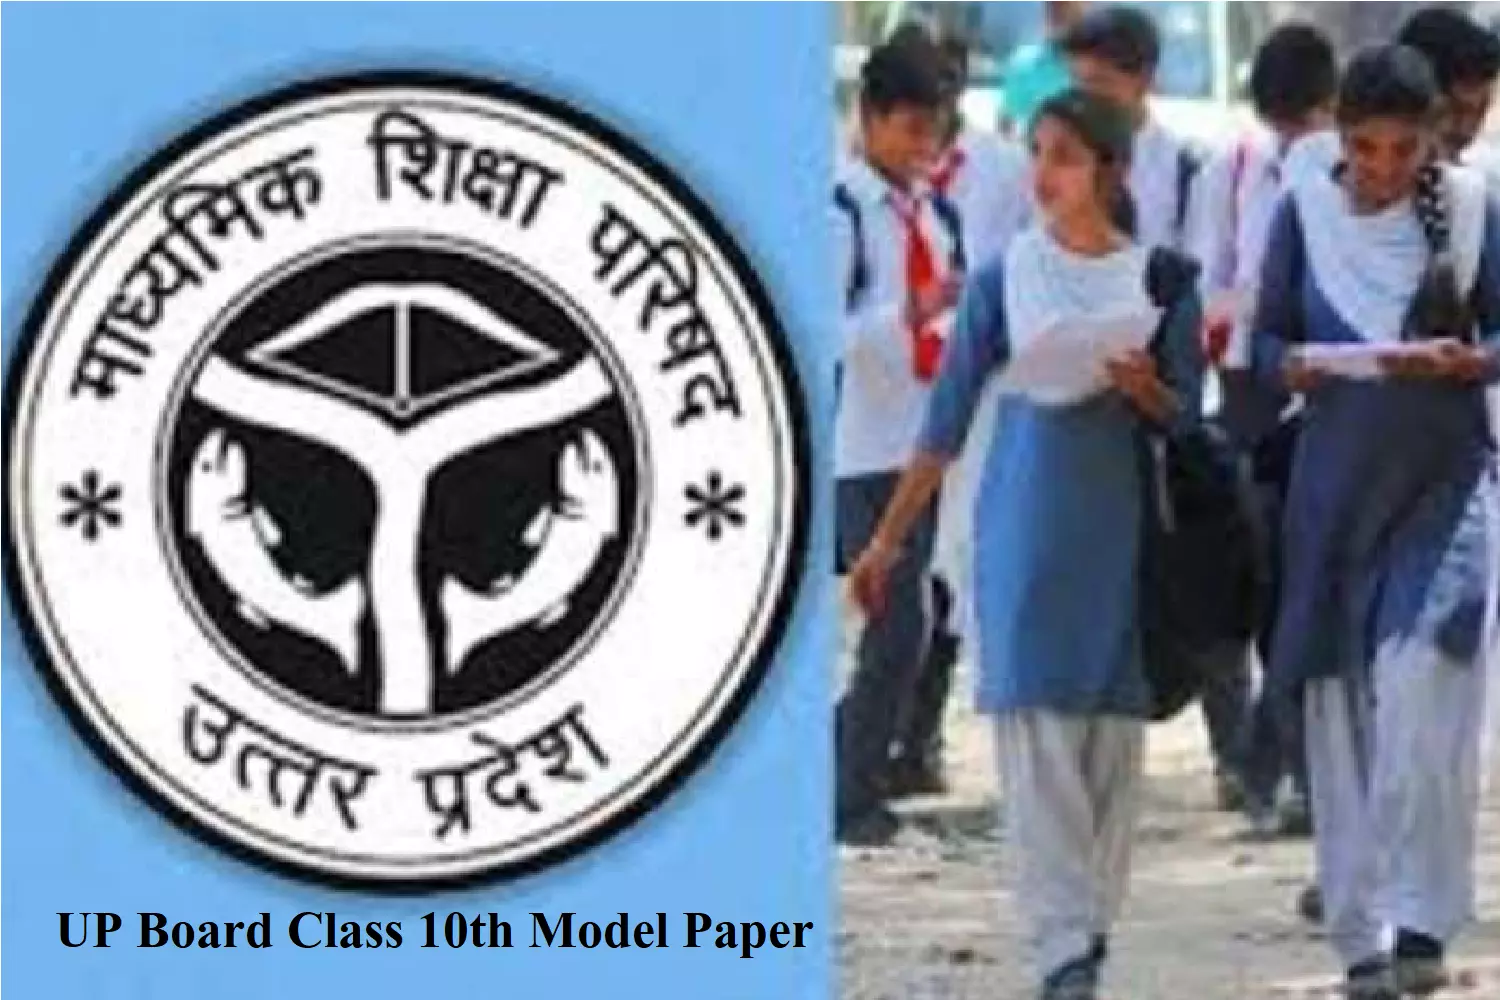 UP Board 10th Model Paper: यूपी बोर्ड कक्षा 10 हिंदी सैंपल पेपर, पूछे जा सकते है, ये बहुविकल्पीय प्रश्न